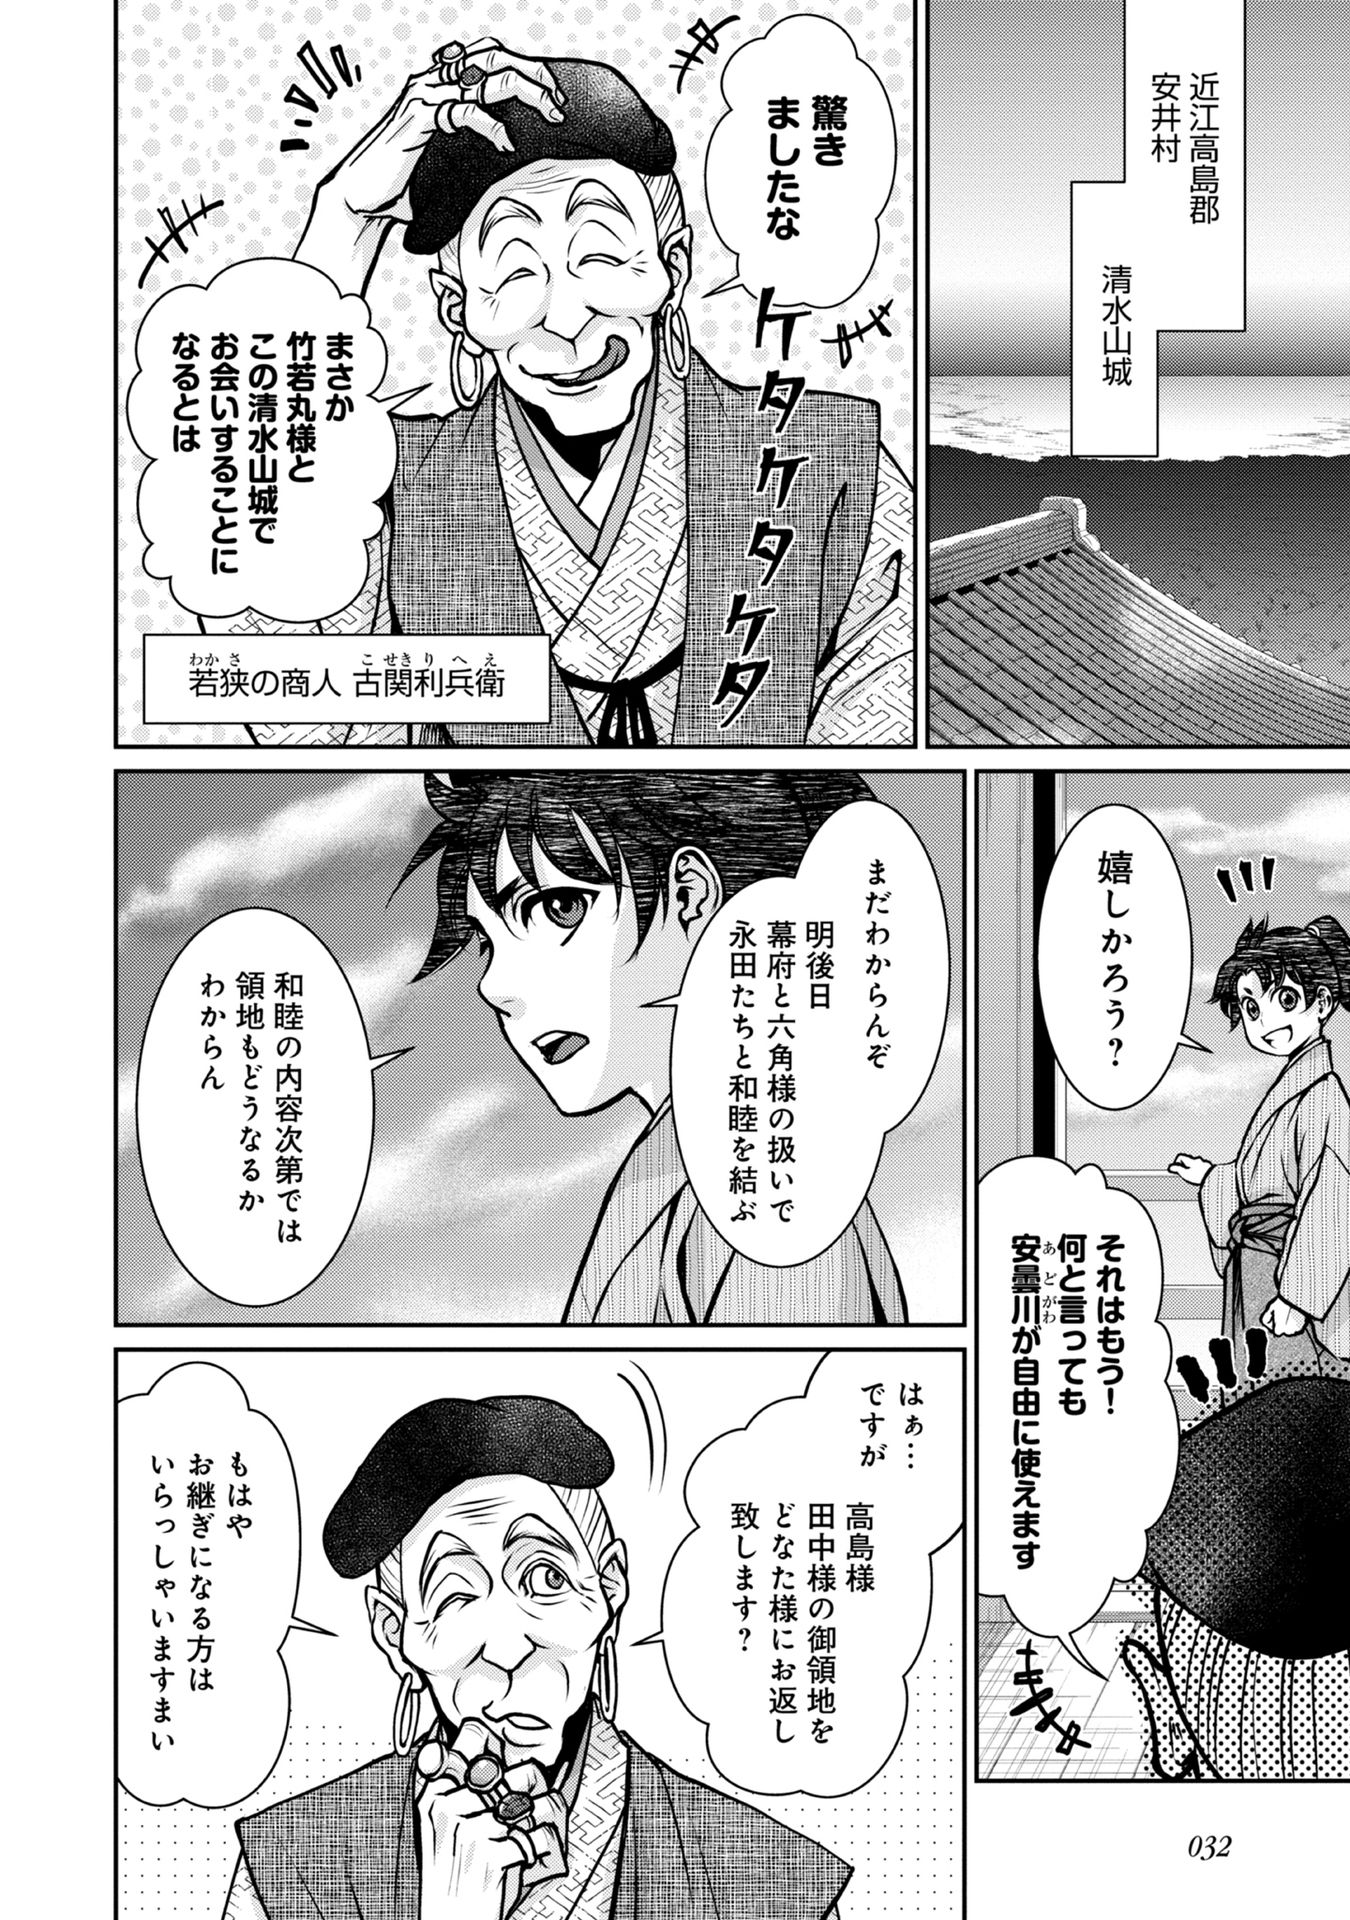 Afumi no Umi – Minamo ga Yureru Toki - Chapter 5 - Page 30